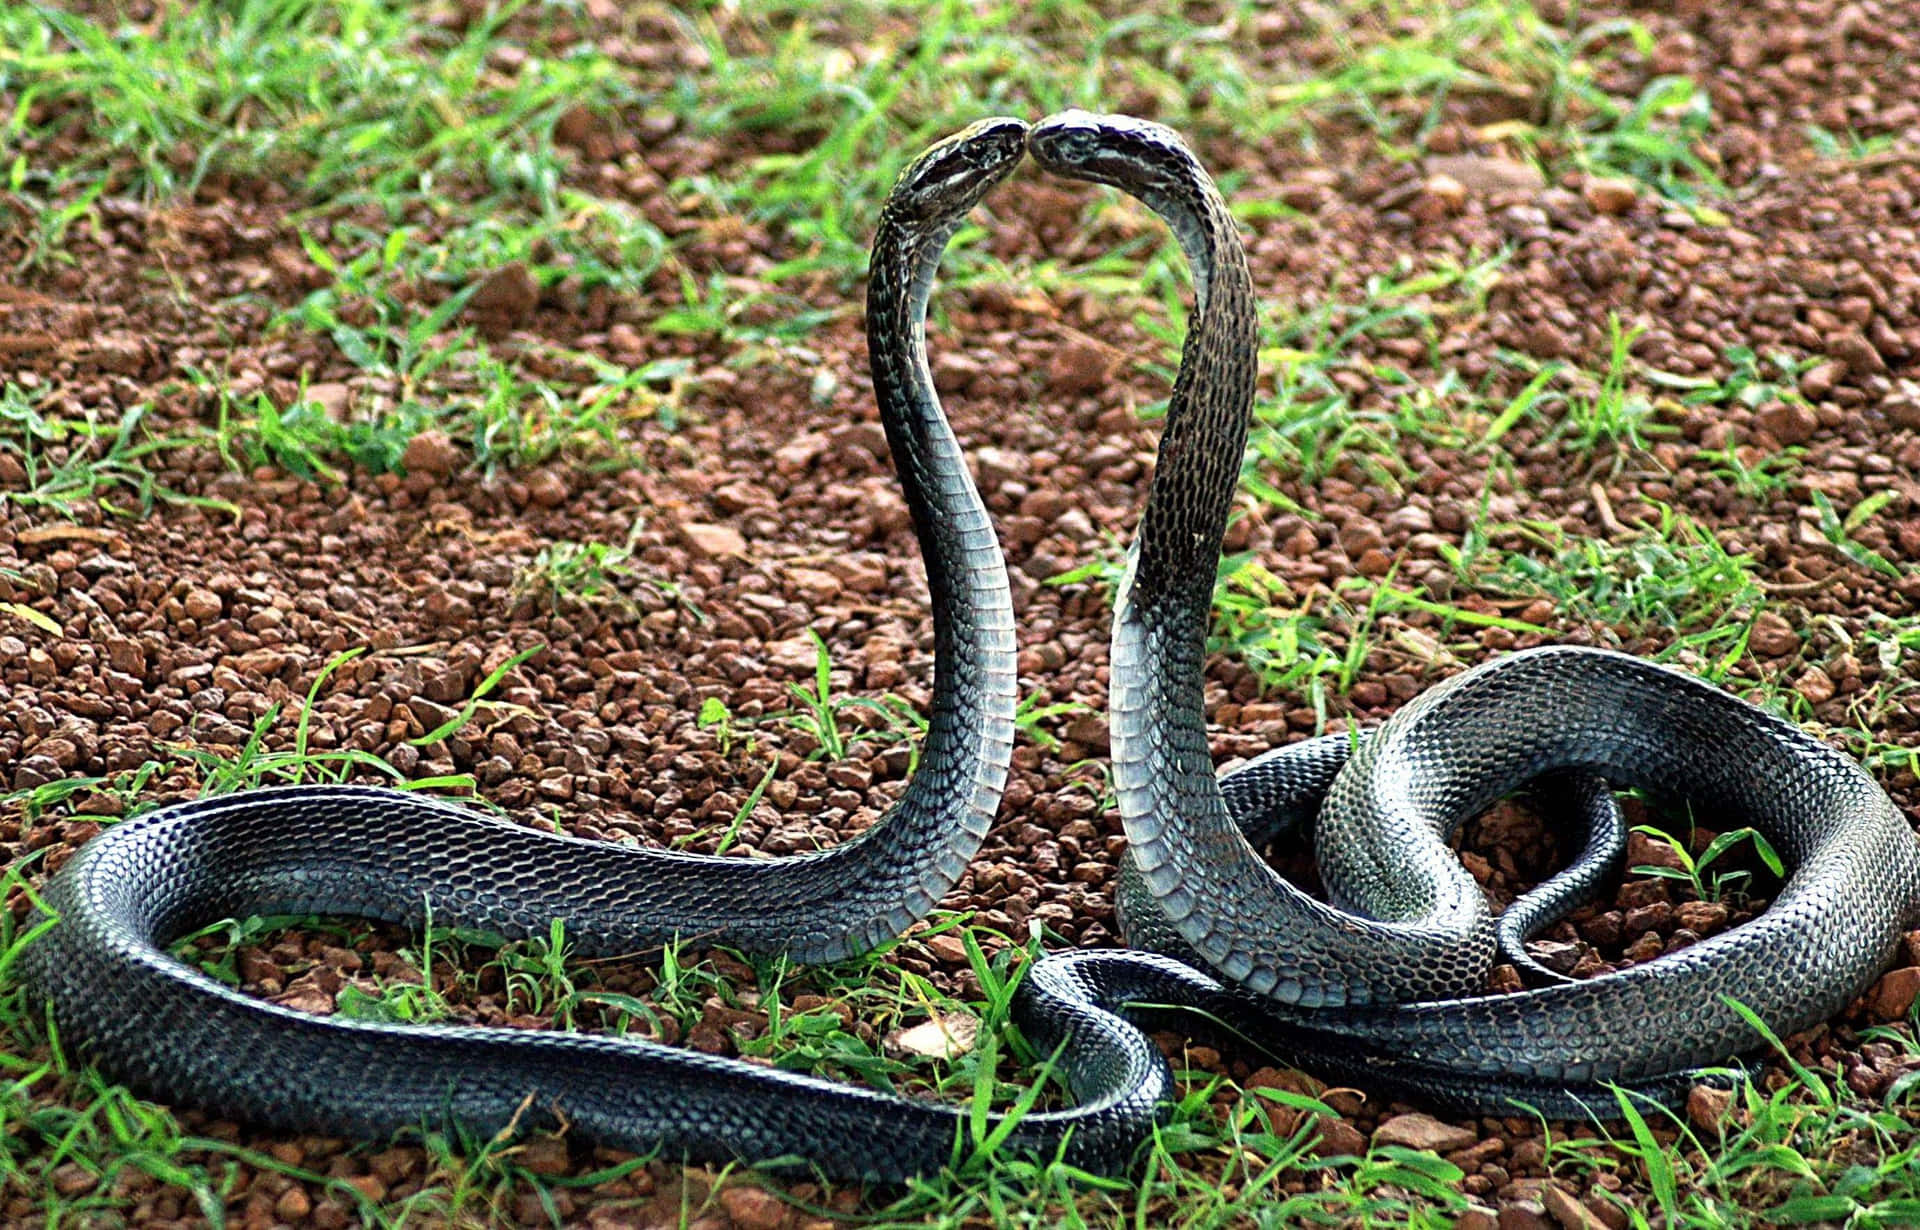 Lamajestuosa Serpiente Rey Cobra Mira Hacia La Distancia.